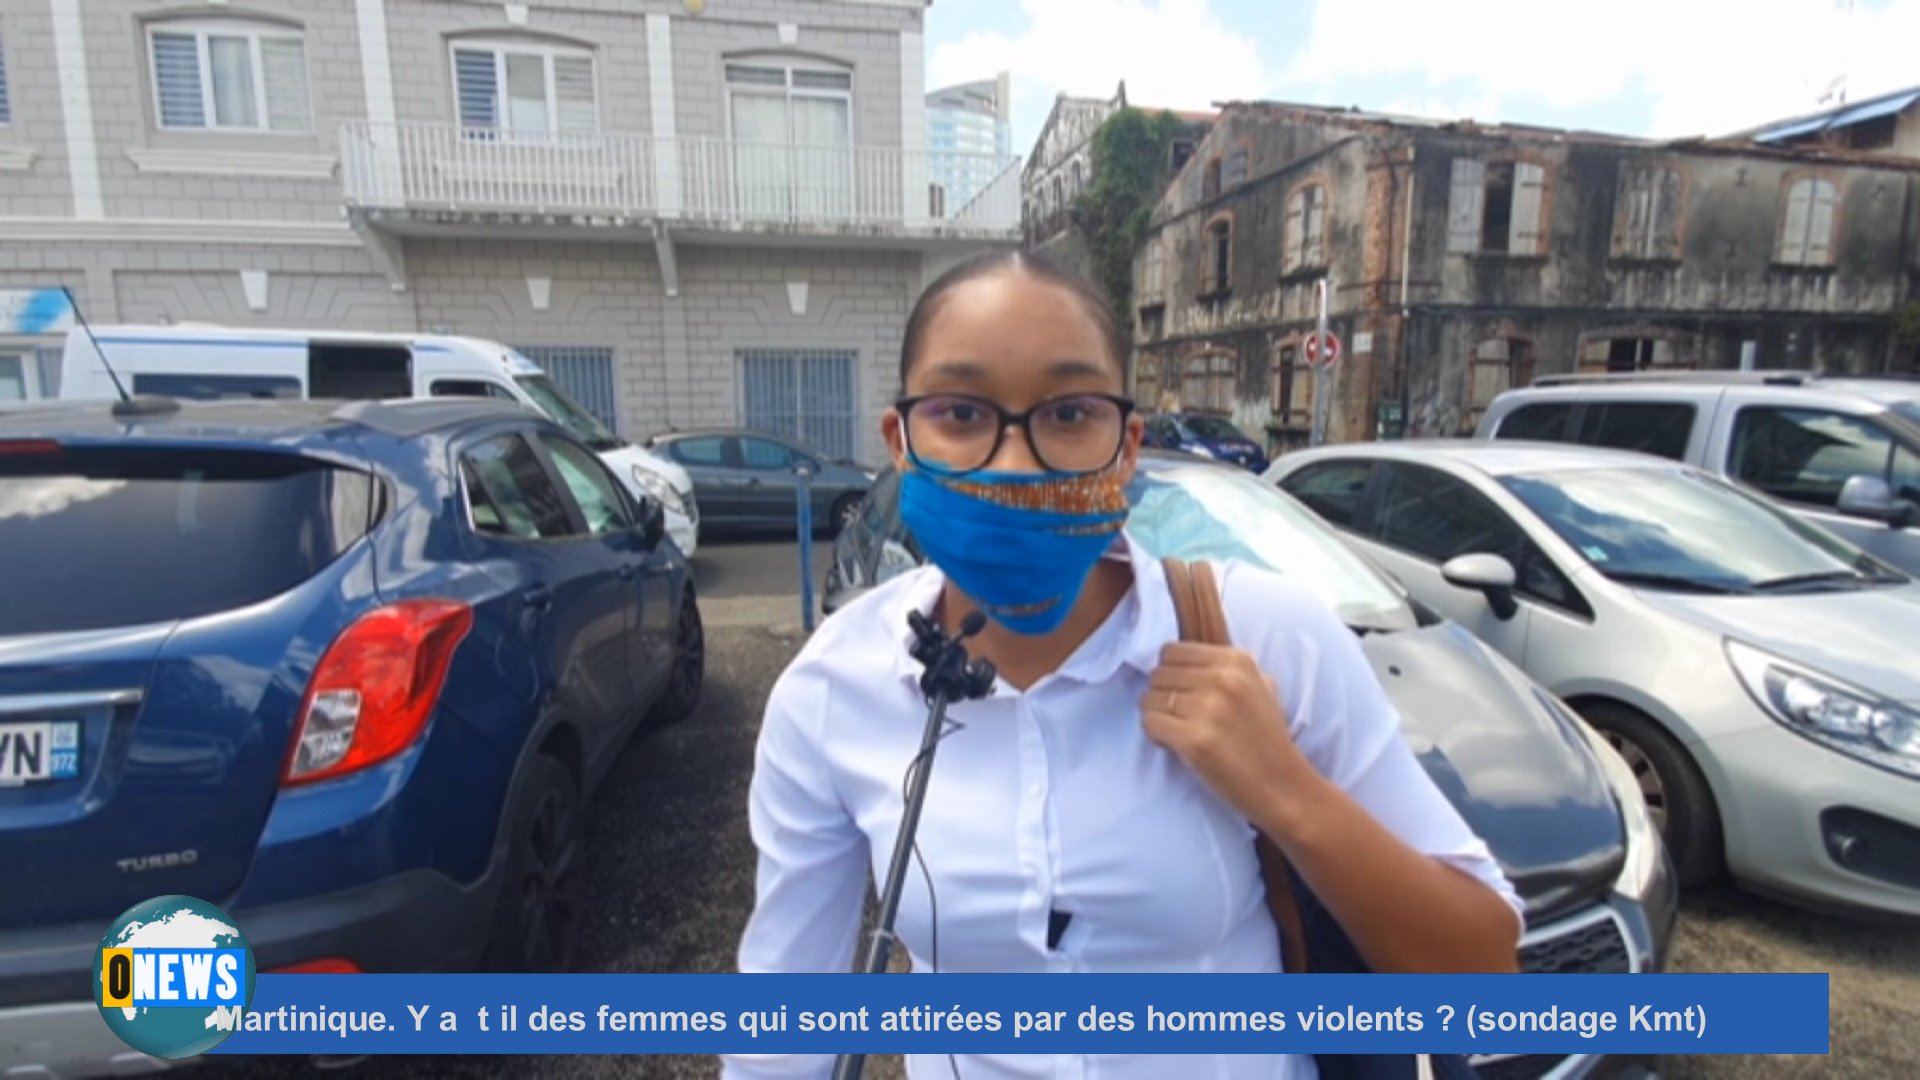 [Vidéo] Onews Martinique. Y a t il des femmes qui sont attirées par des hommes violents ? (sondage Kmt)